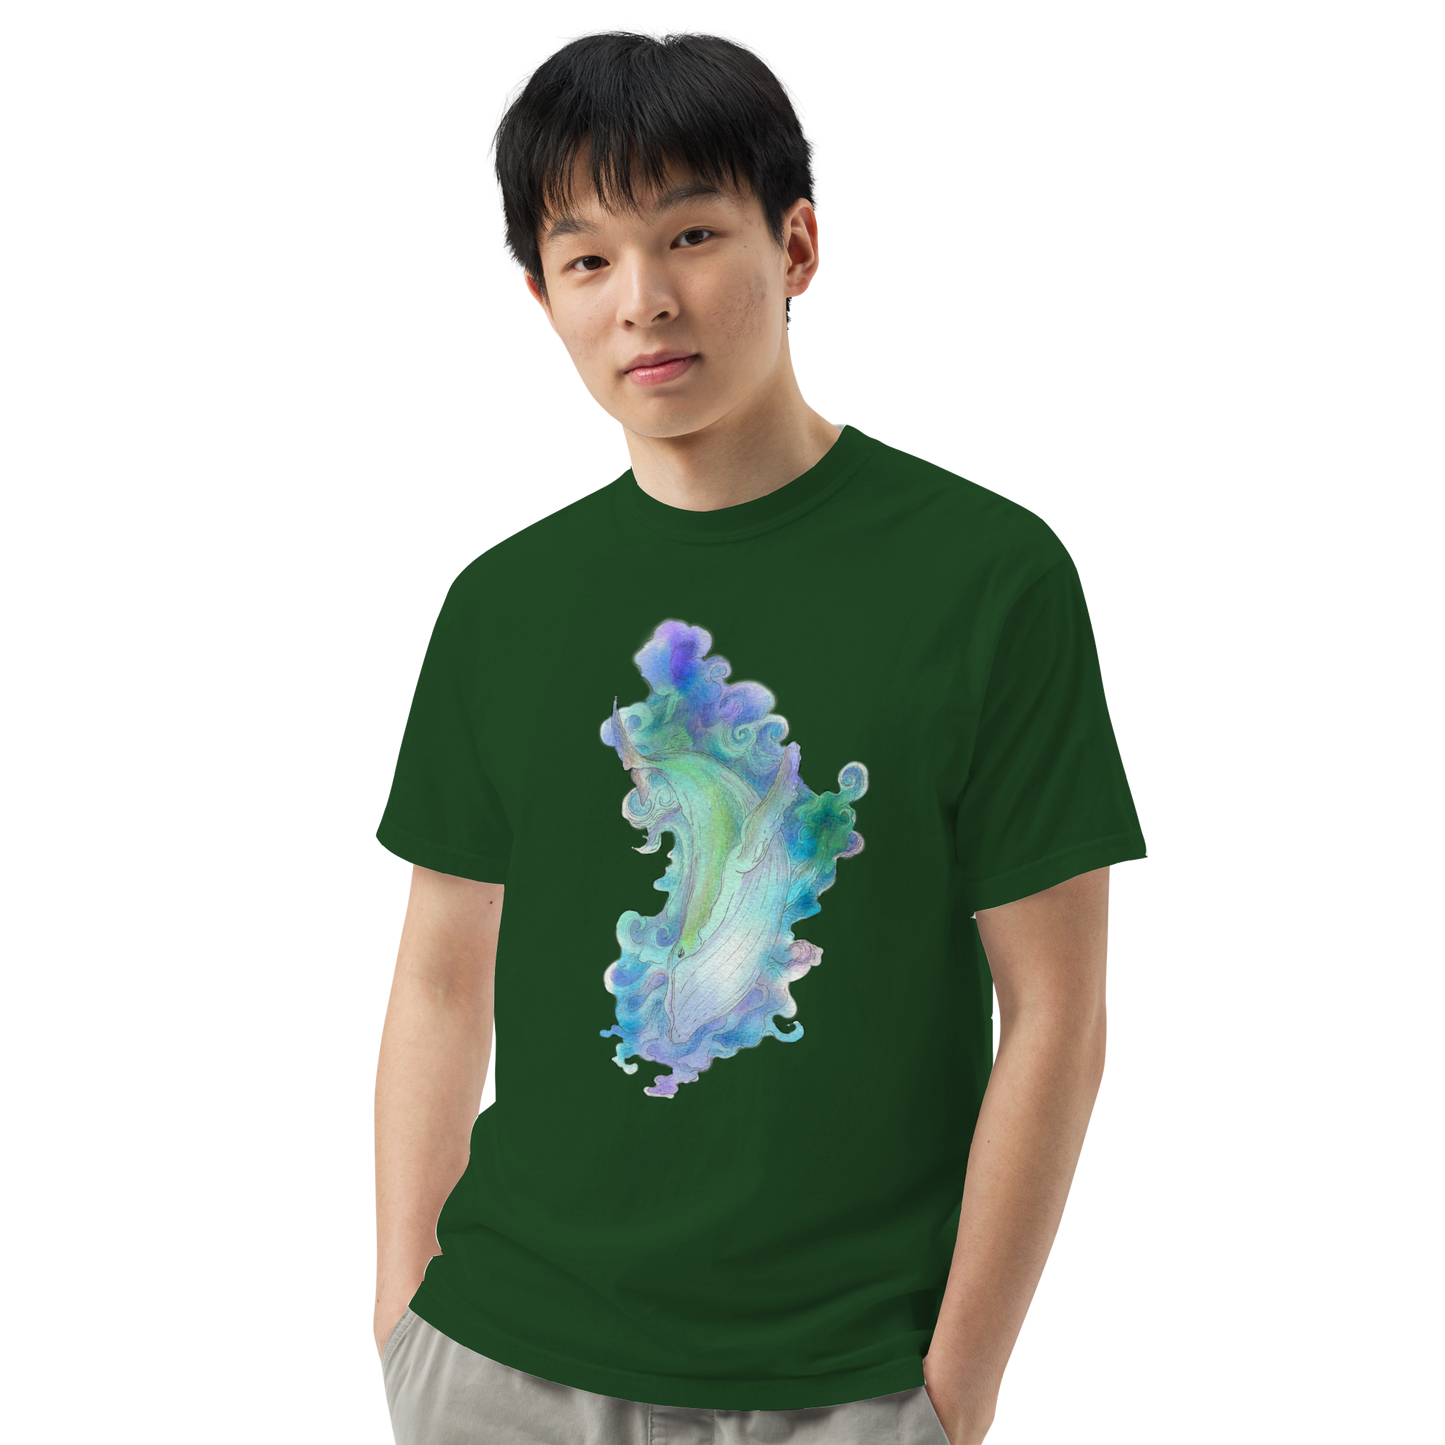 Whale-o T-shirt